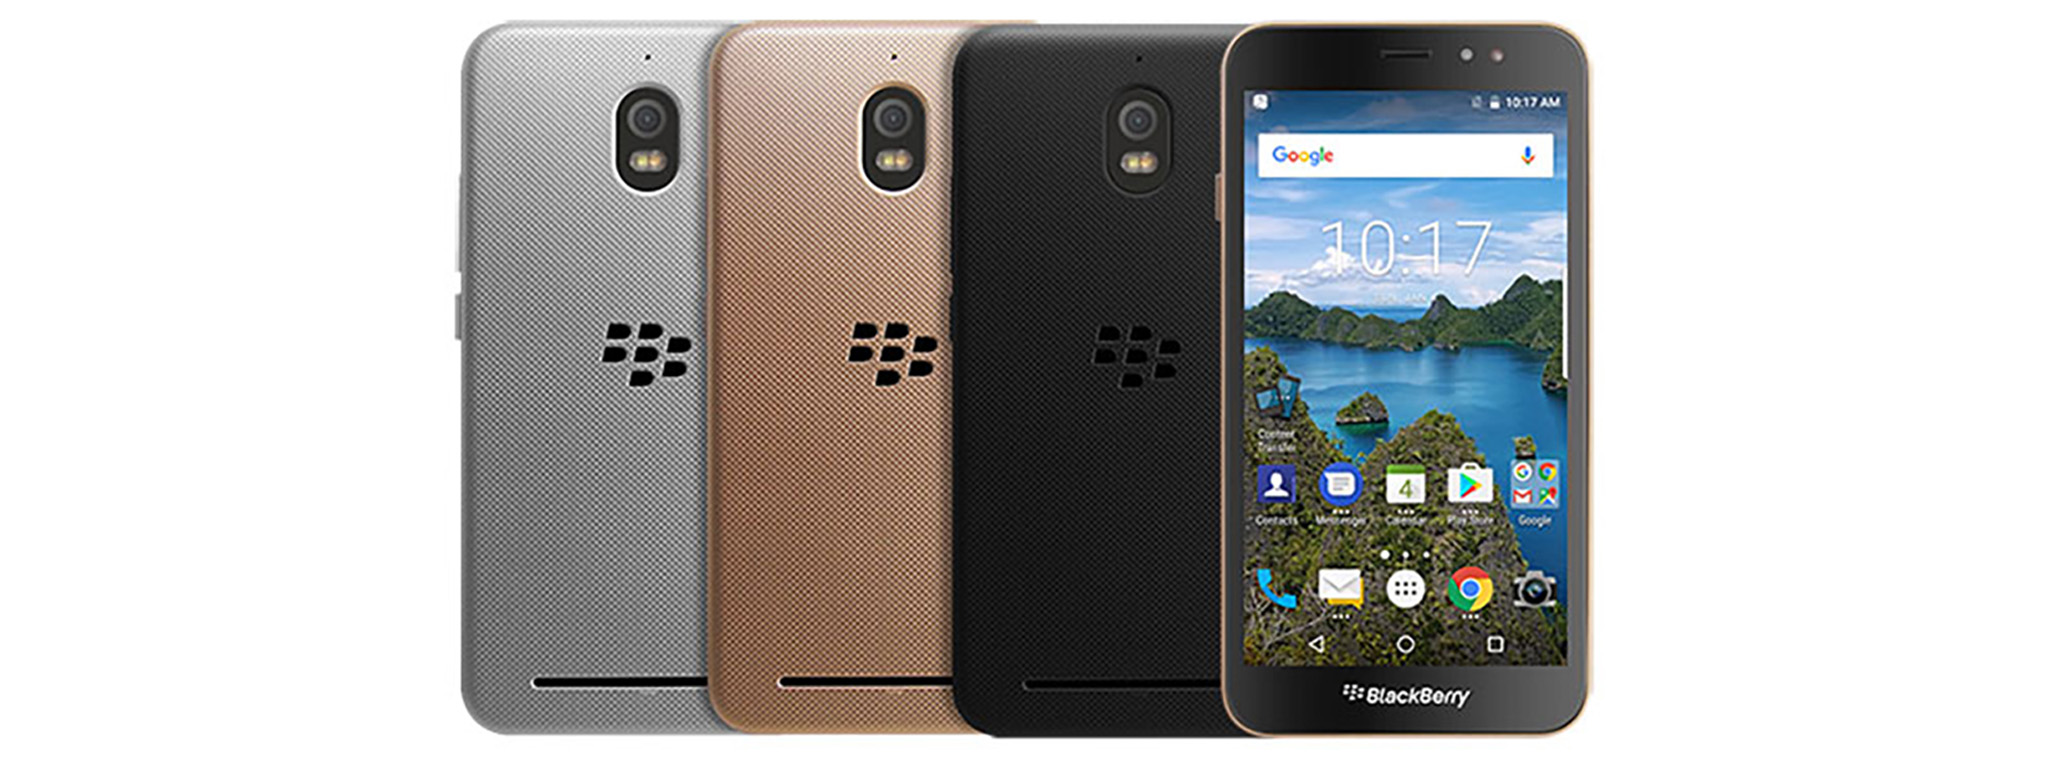 BlackBerry Aurora chính thức ra mắt tại Indonesia, full cảm ứng, 4 GB RAM, 2 SIM, giá ~261 USD